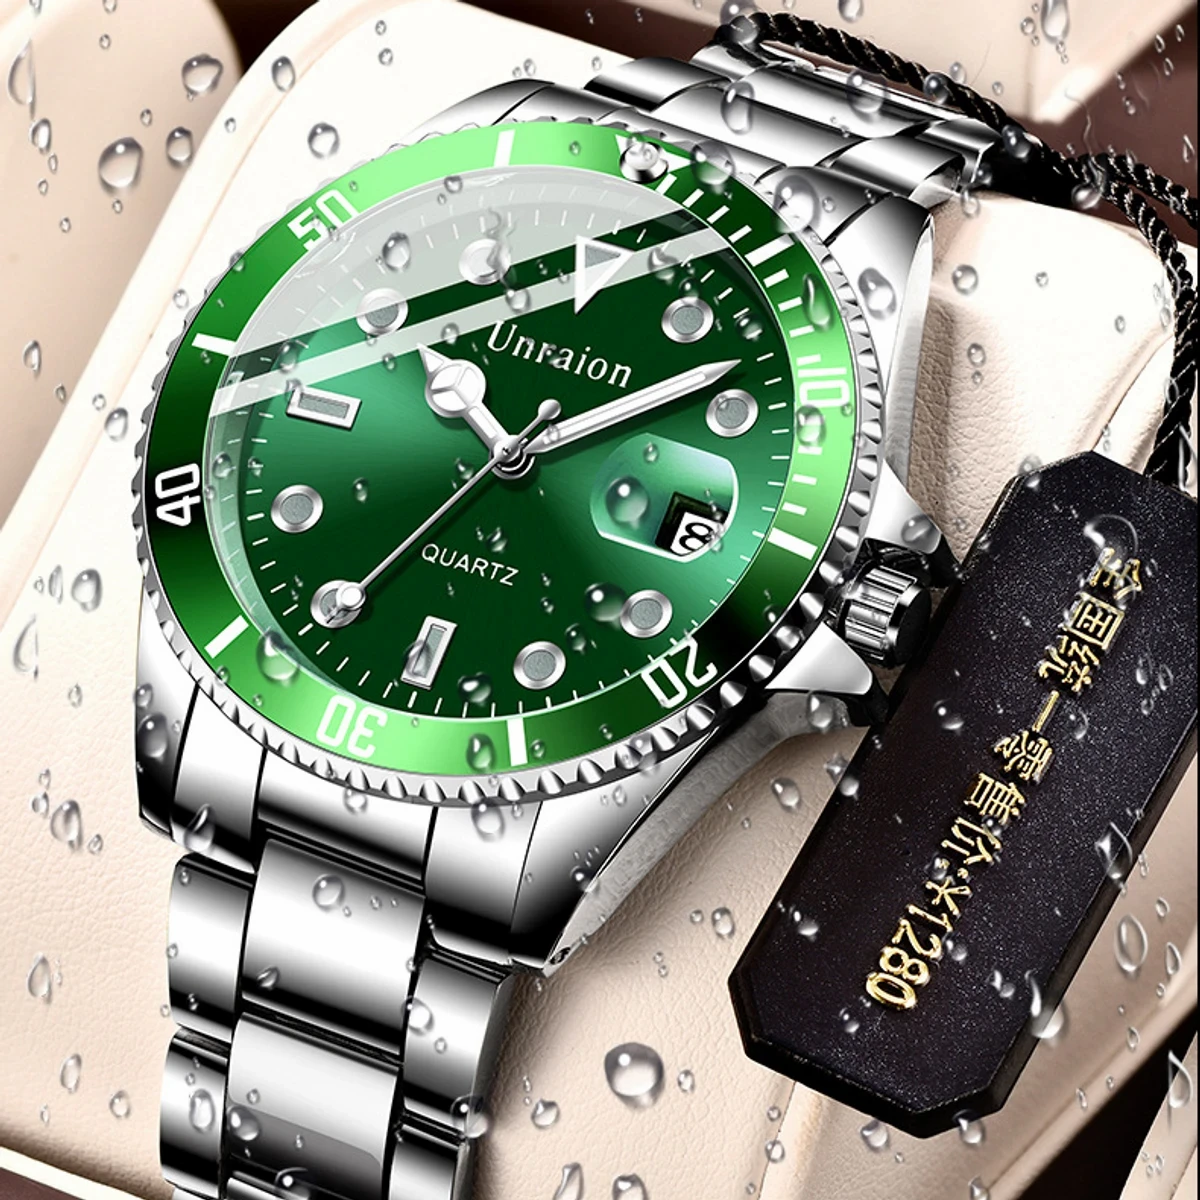 Comudir-stainless-steel-waterproof-men's-quartz-watches